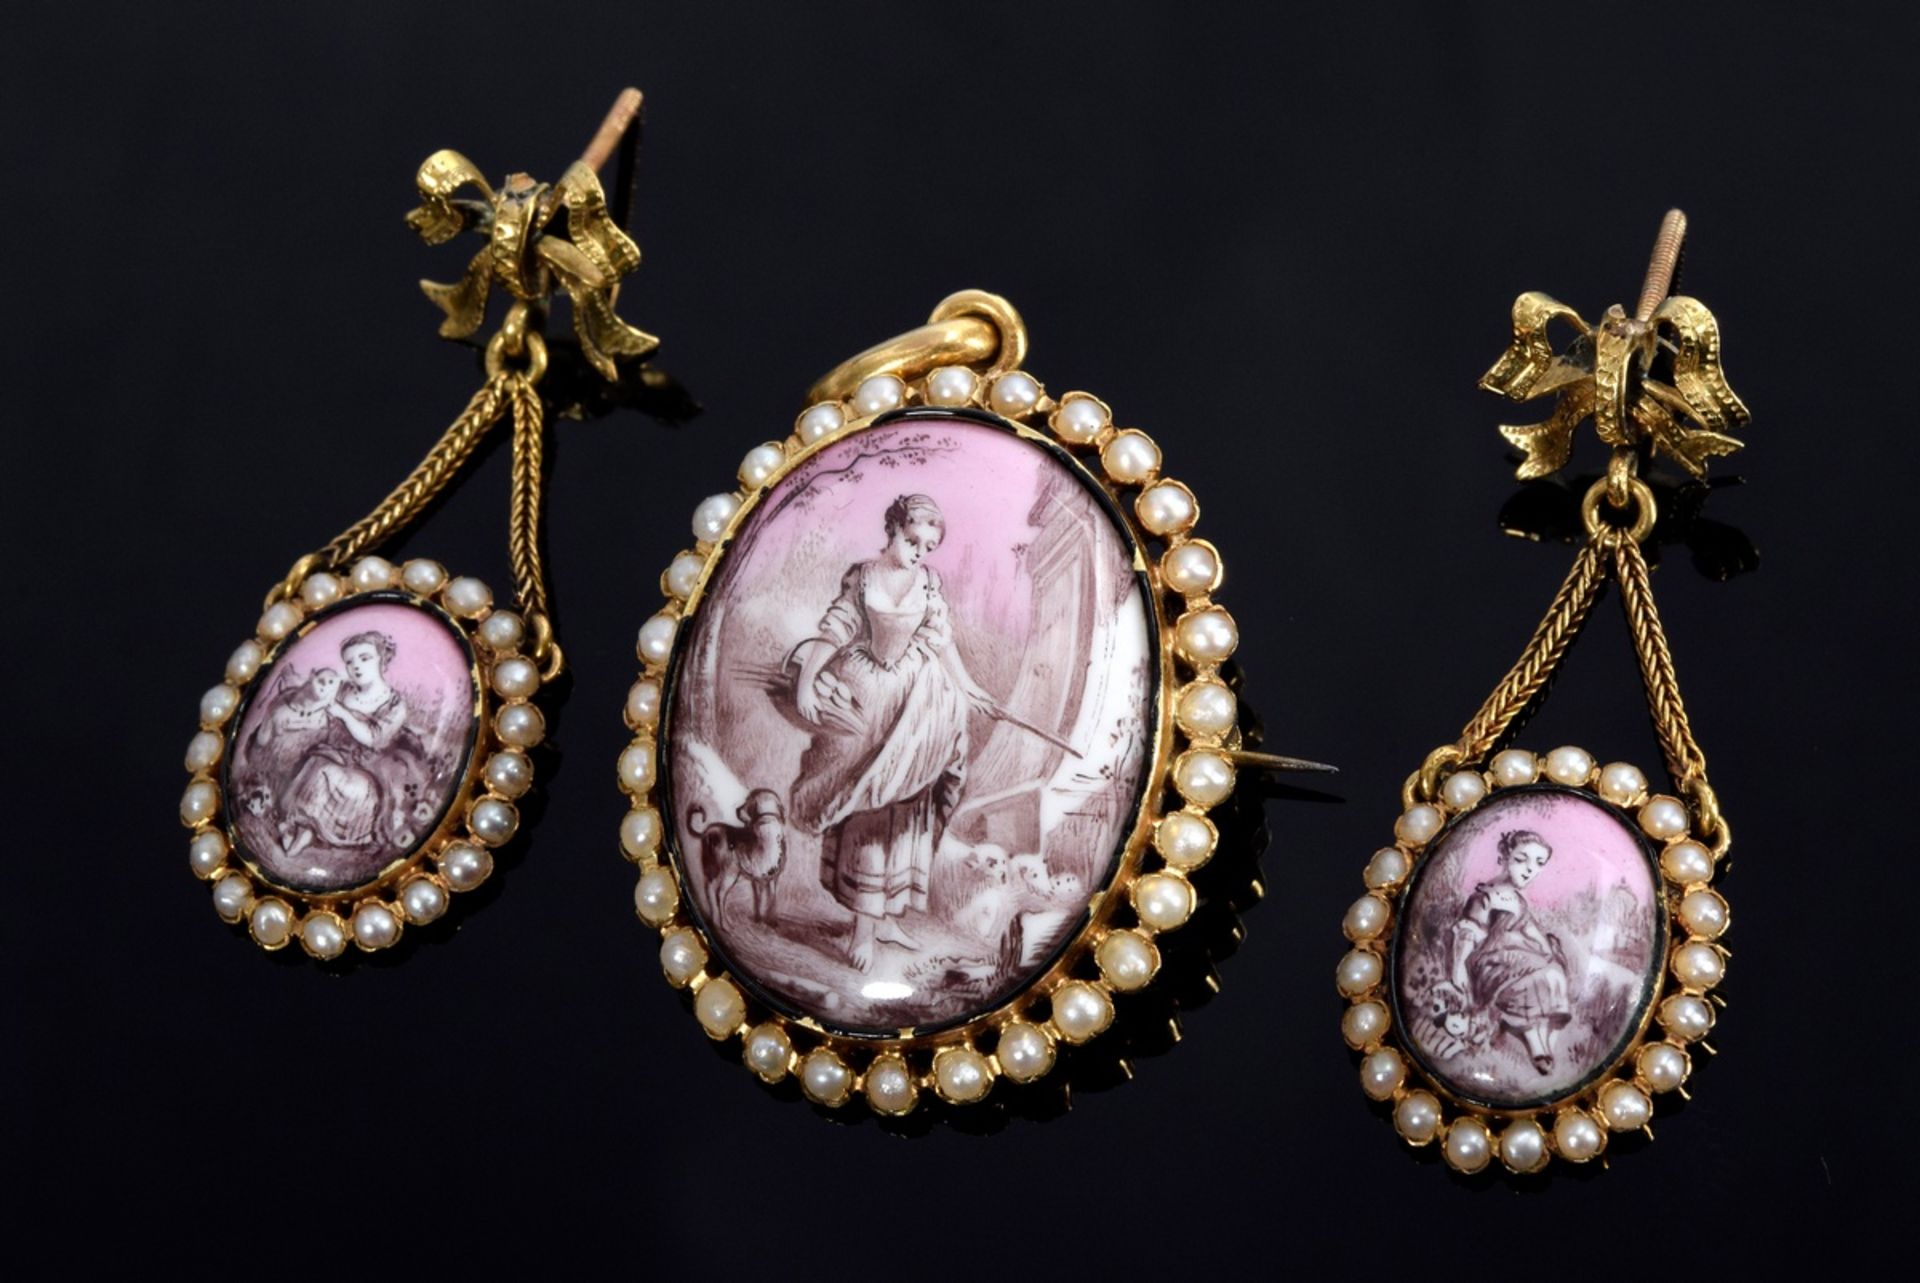 3 Teile GG 750 Demiparure im Louis XVI Stil mit Emaillemedaillons "Schäferszenen" in Grisaillemaler